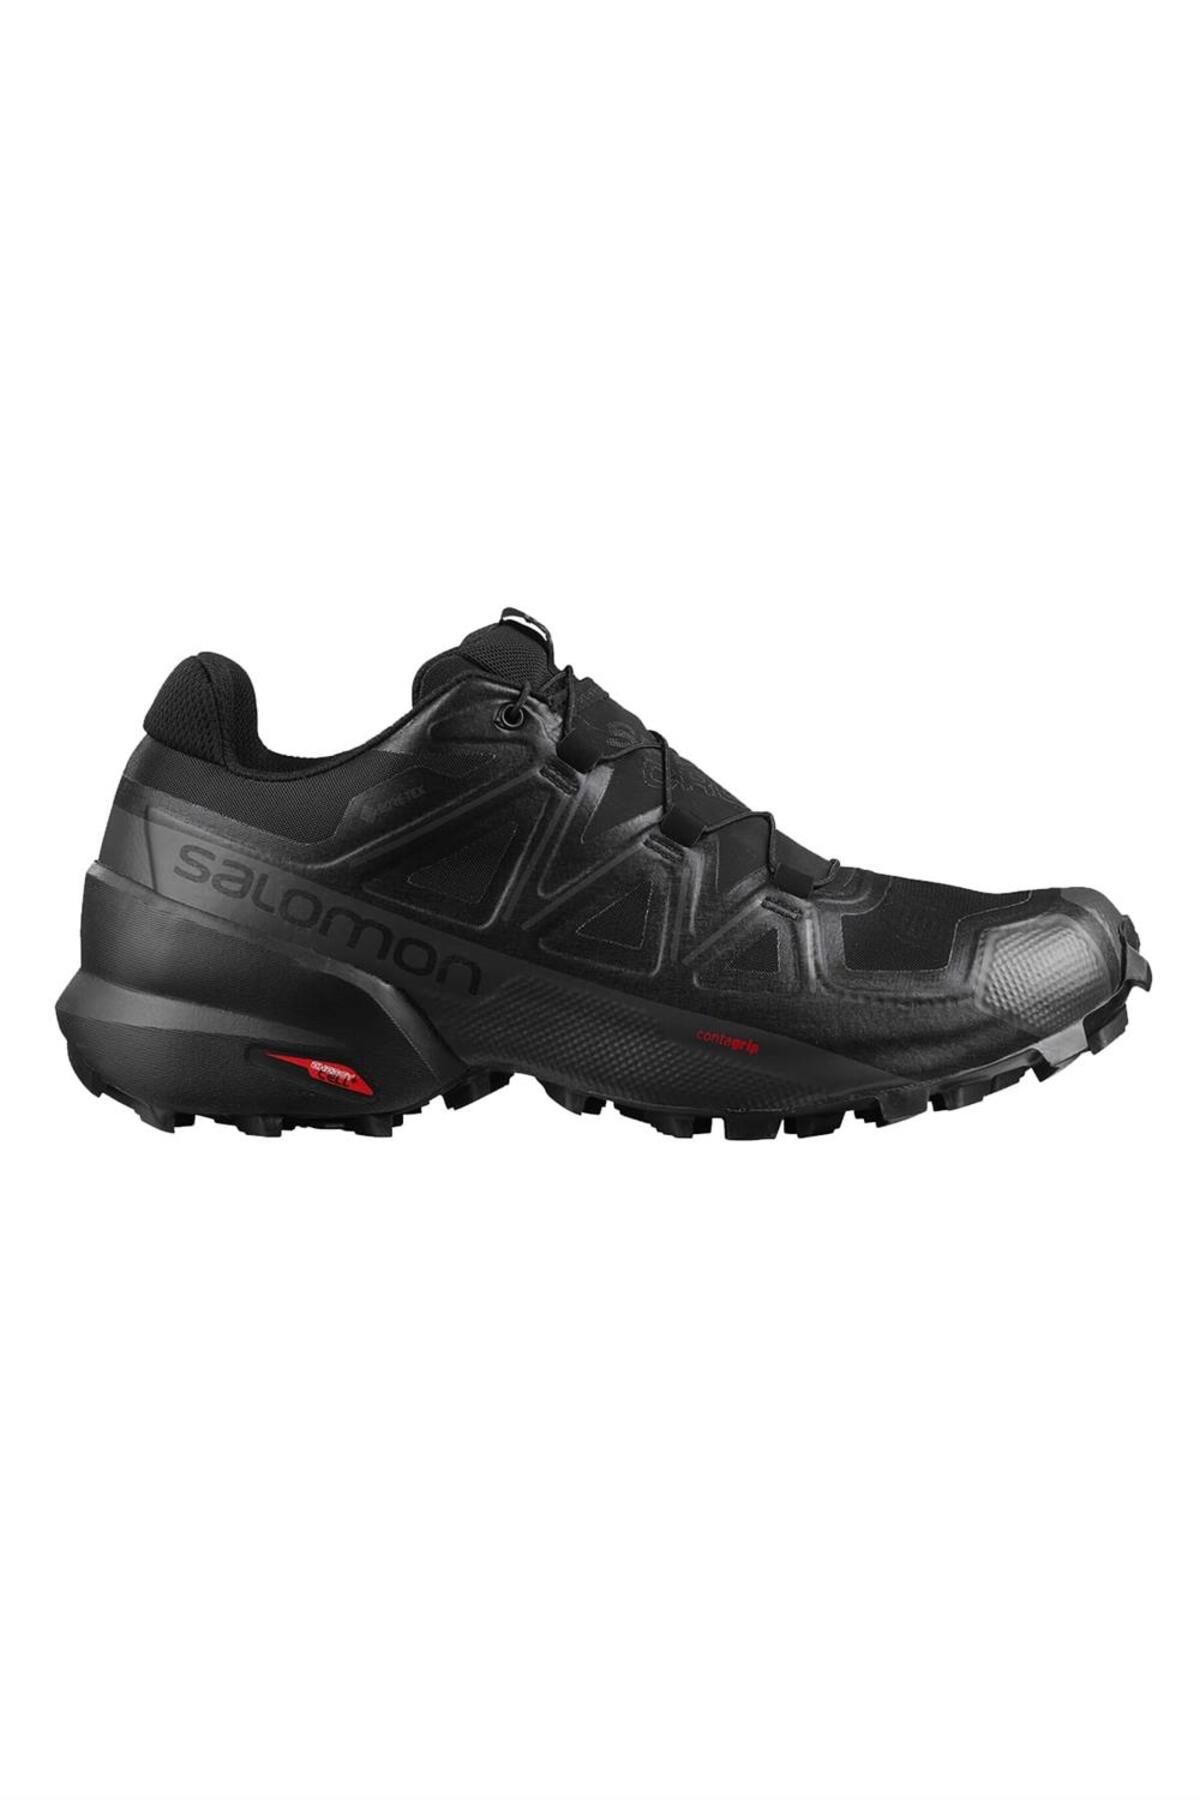 Salomon Speedcross 5 Gtx Erkek Koşu Ayakkabısı L40795300